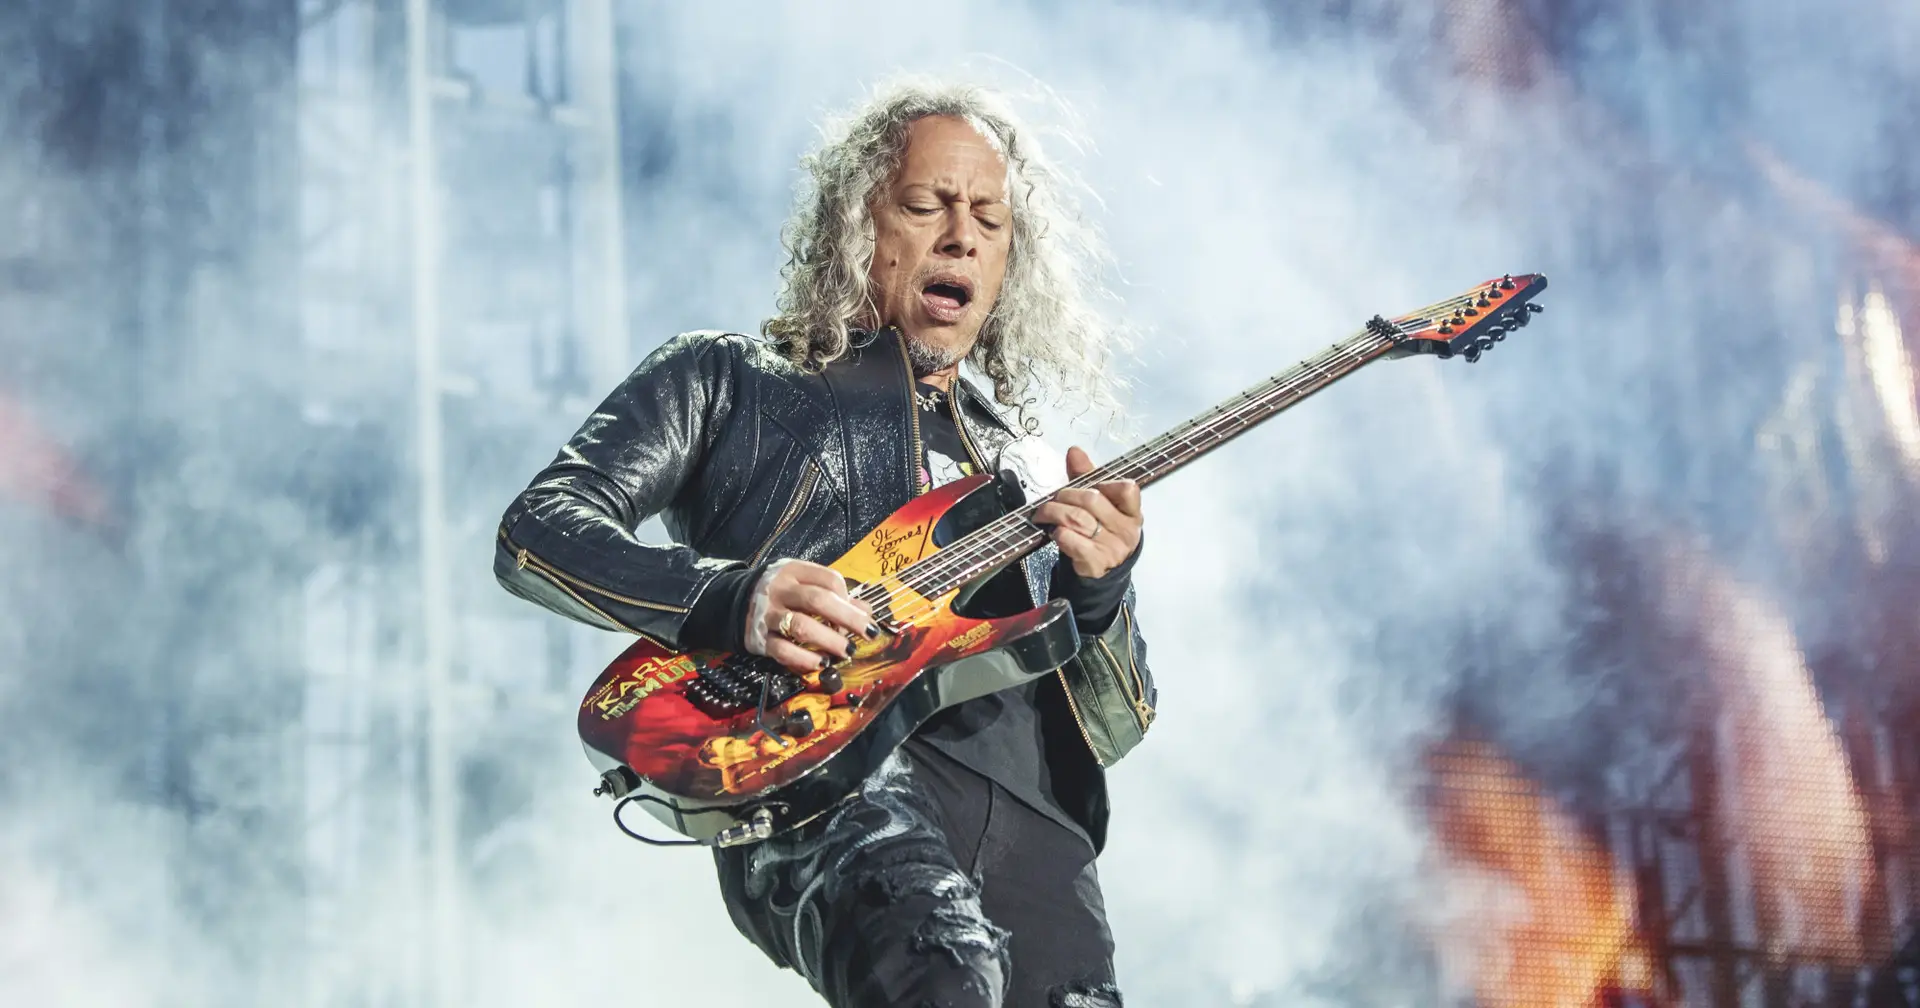 Kirk Hammett distraiu-se e quase arruinava um dos clássicos dos Metallica em concerto. Veja o vídeo